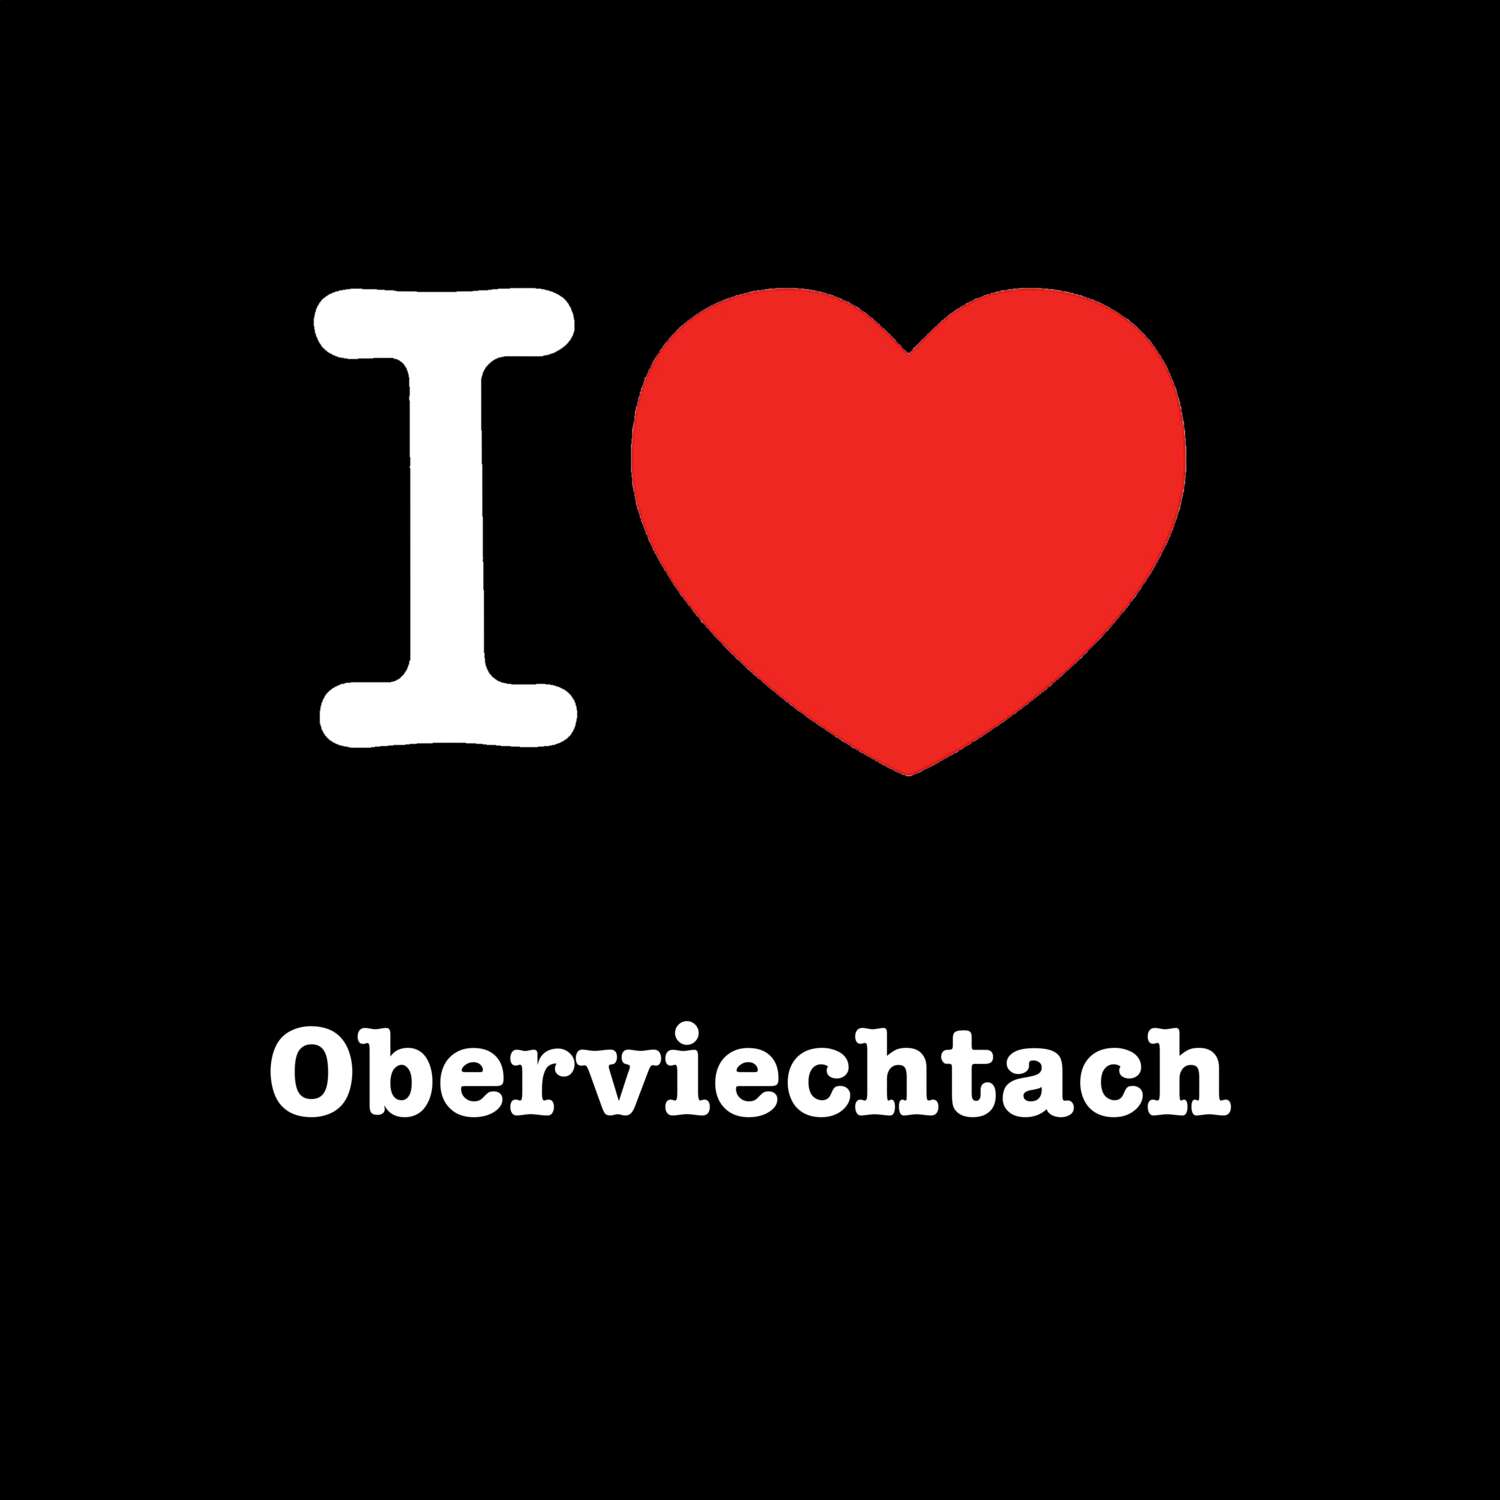 Oberviechtach T-Shirt »I love«